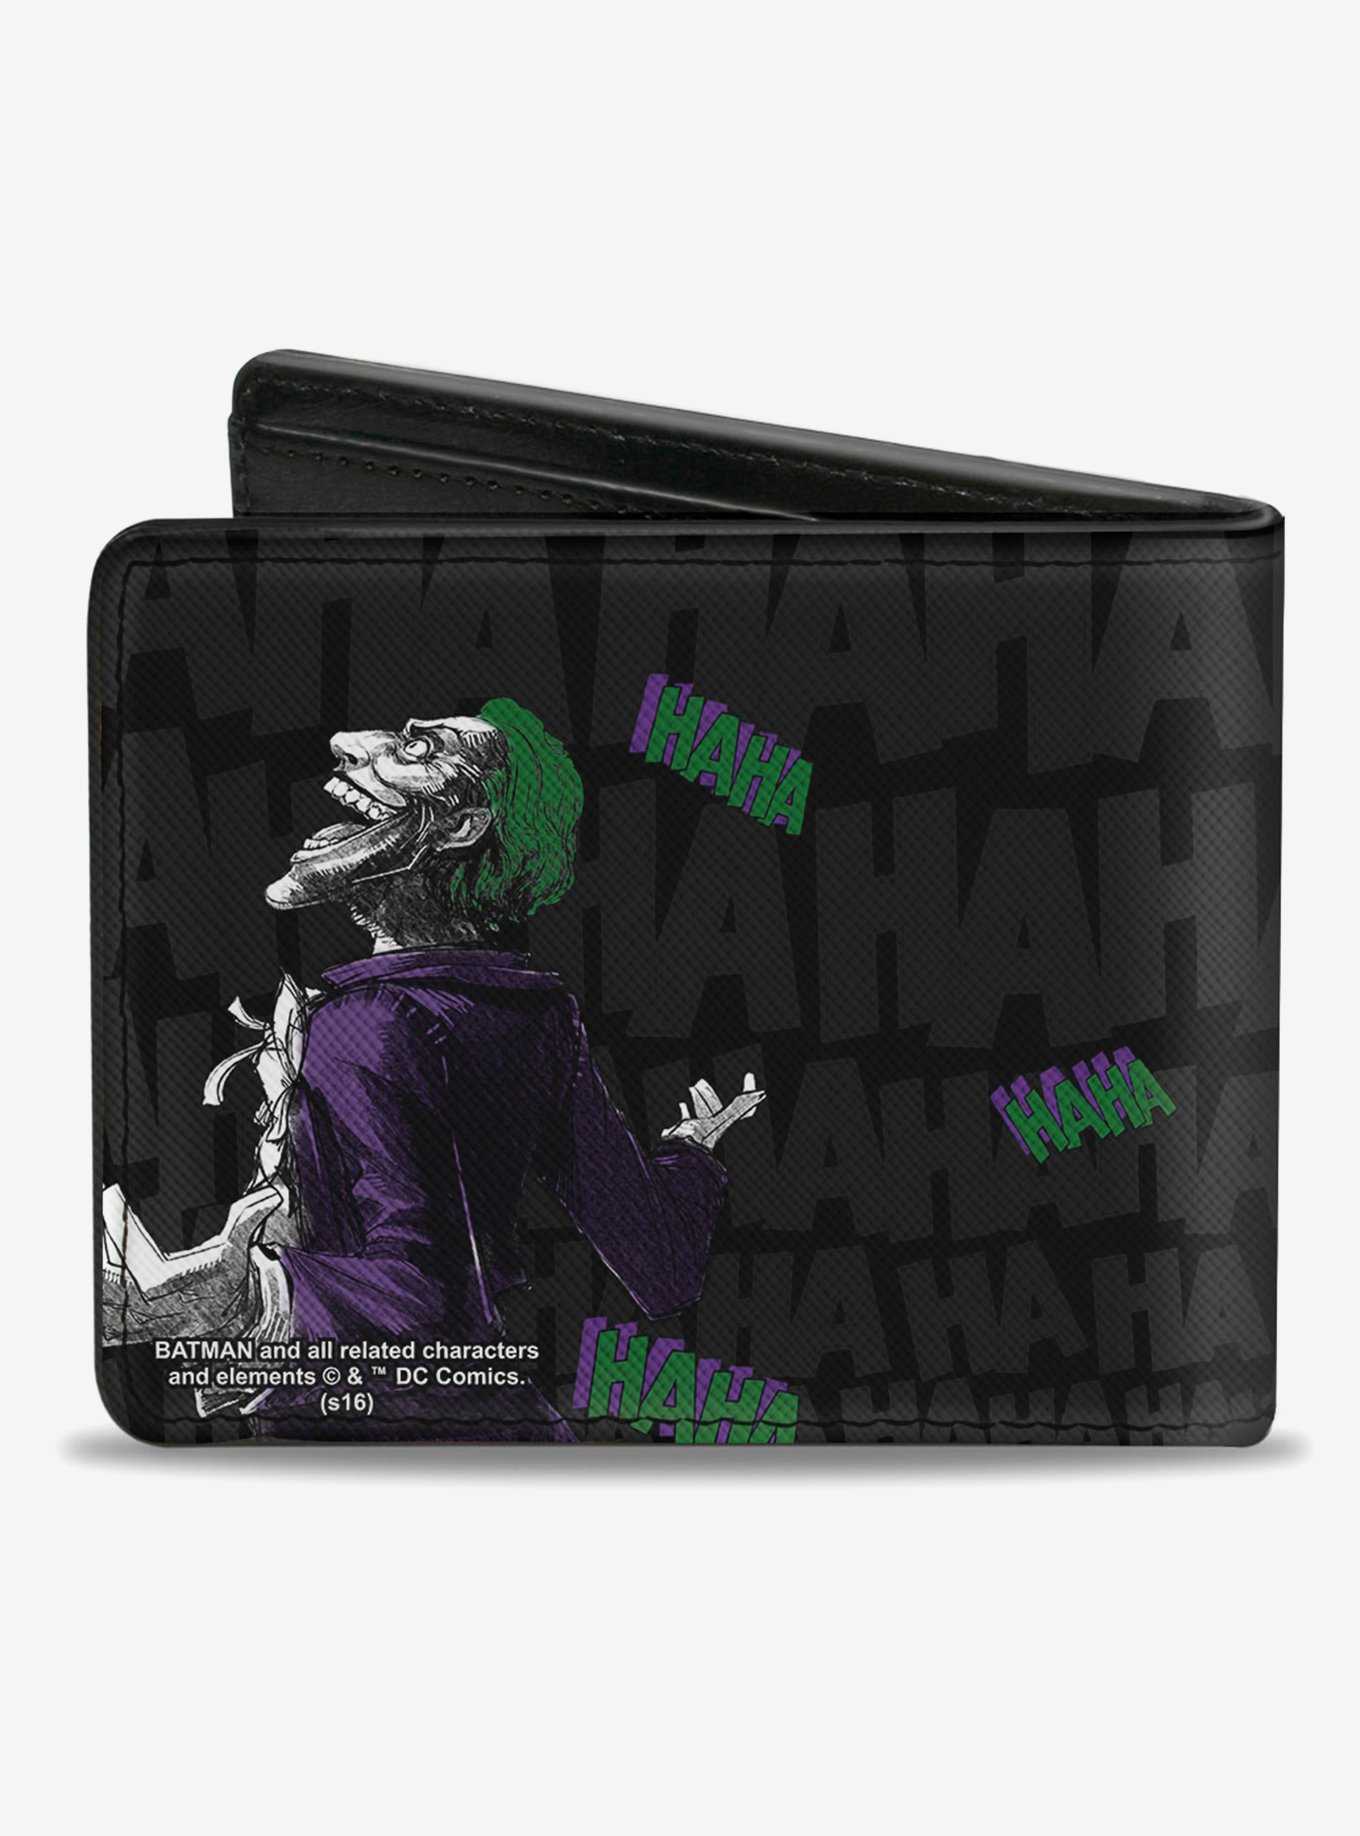 DC Comics Batman Joker Smiling Haha Bifold Wallet, , hi-res